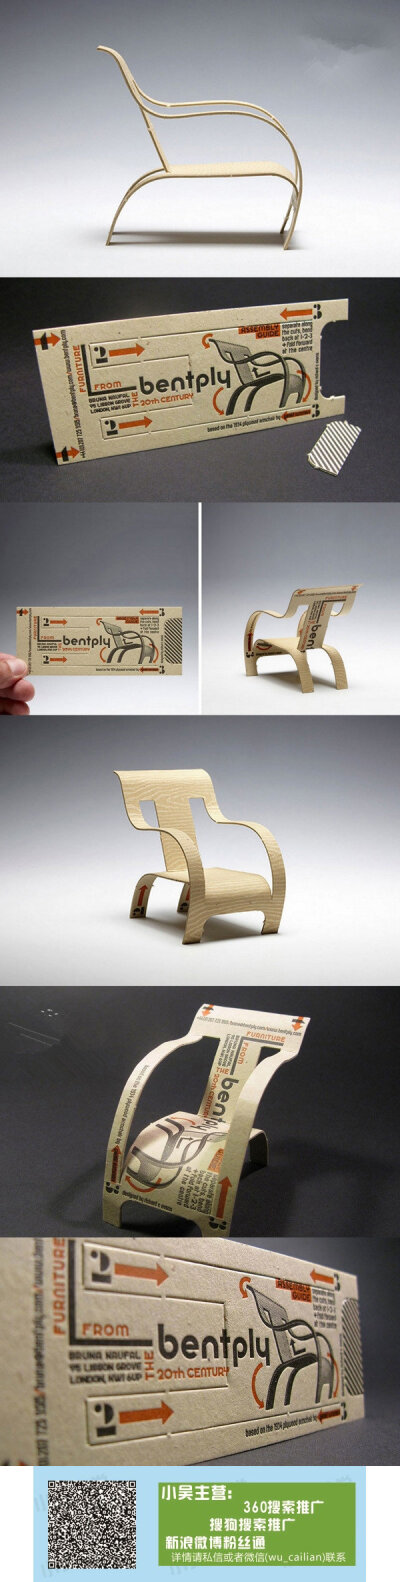 是普通的瓦楞纸,但只要按照凹槽的纹路你就能把它变成一张小巧的椅子